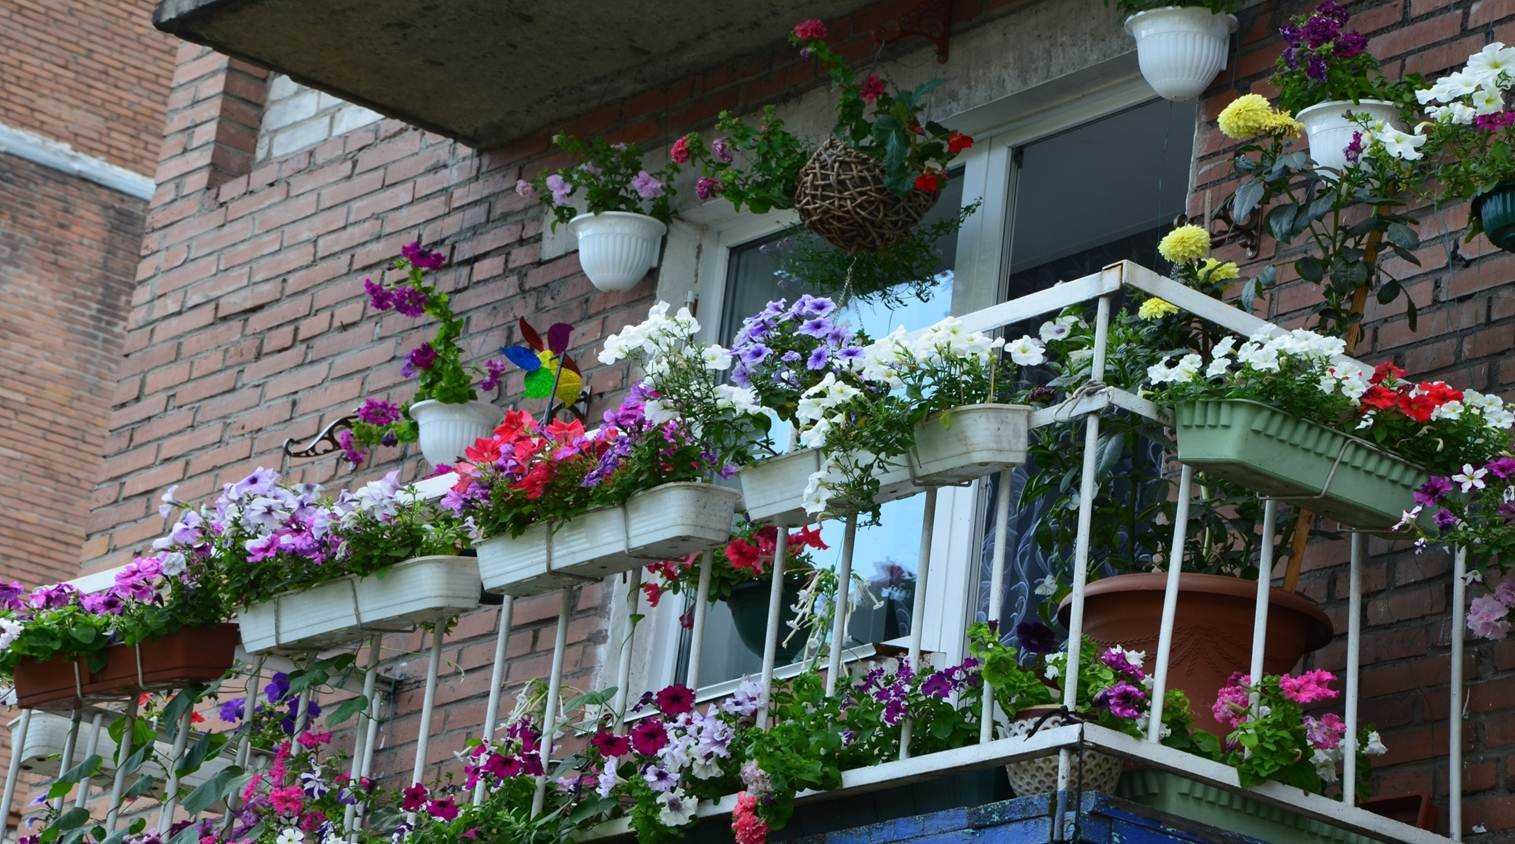 Северный балкон. Петуньи балкон Джульетты. Анемона на балконе. Балкон с цветами. Застекленный балкон с цветами.